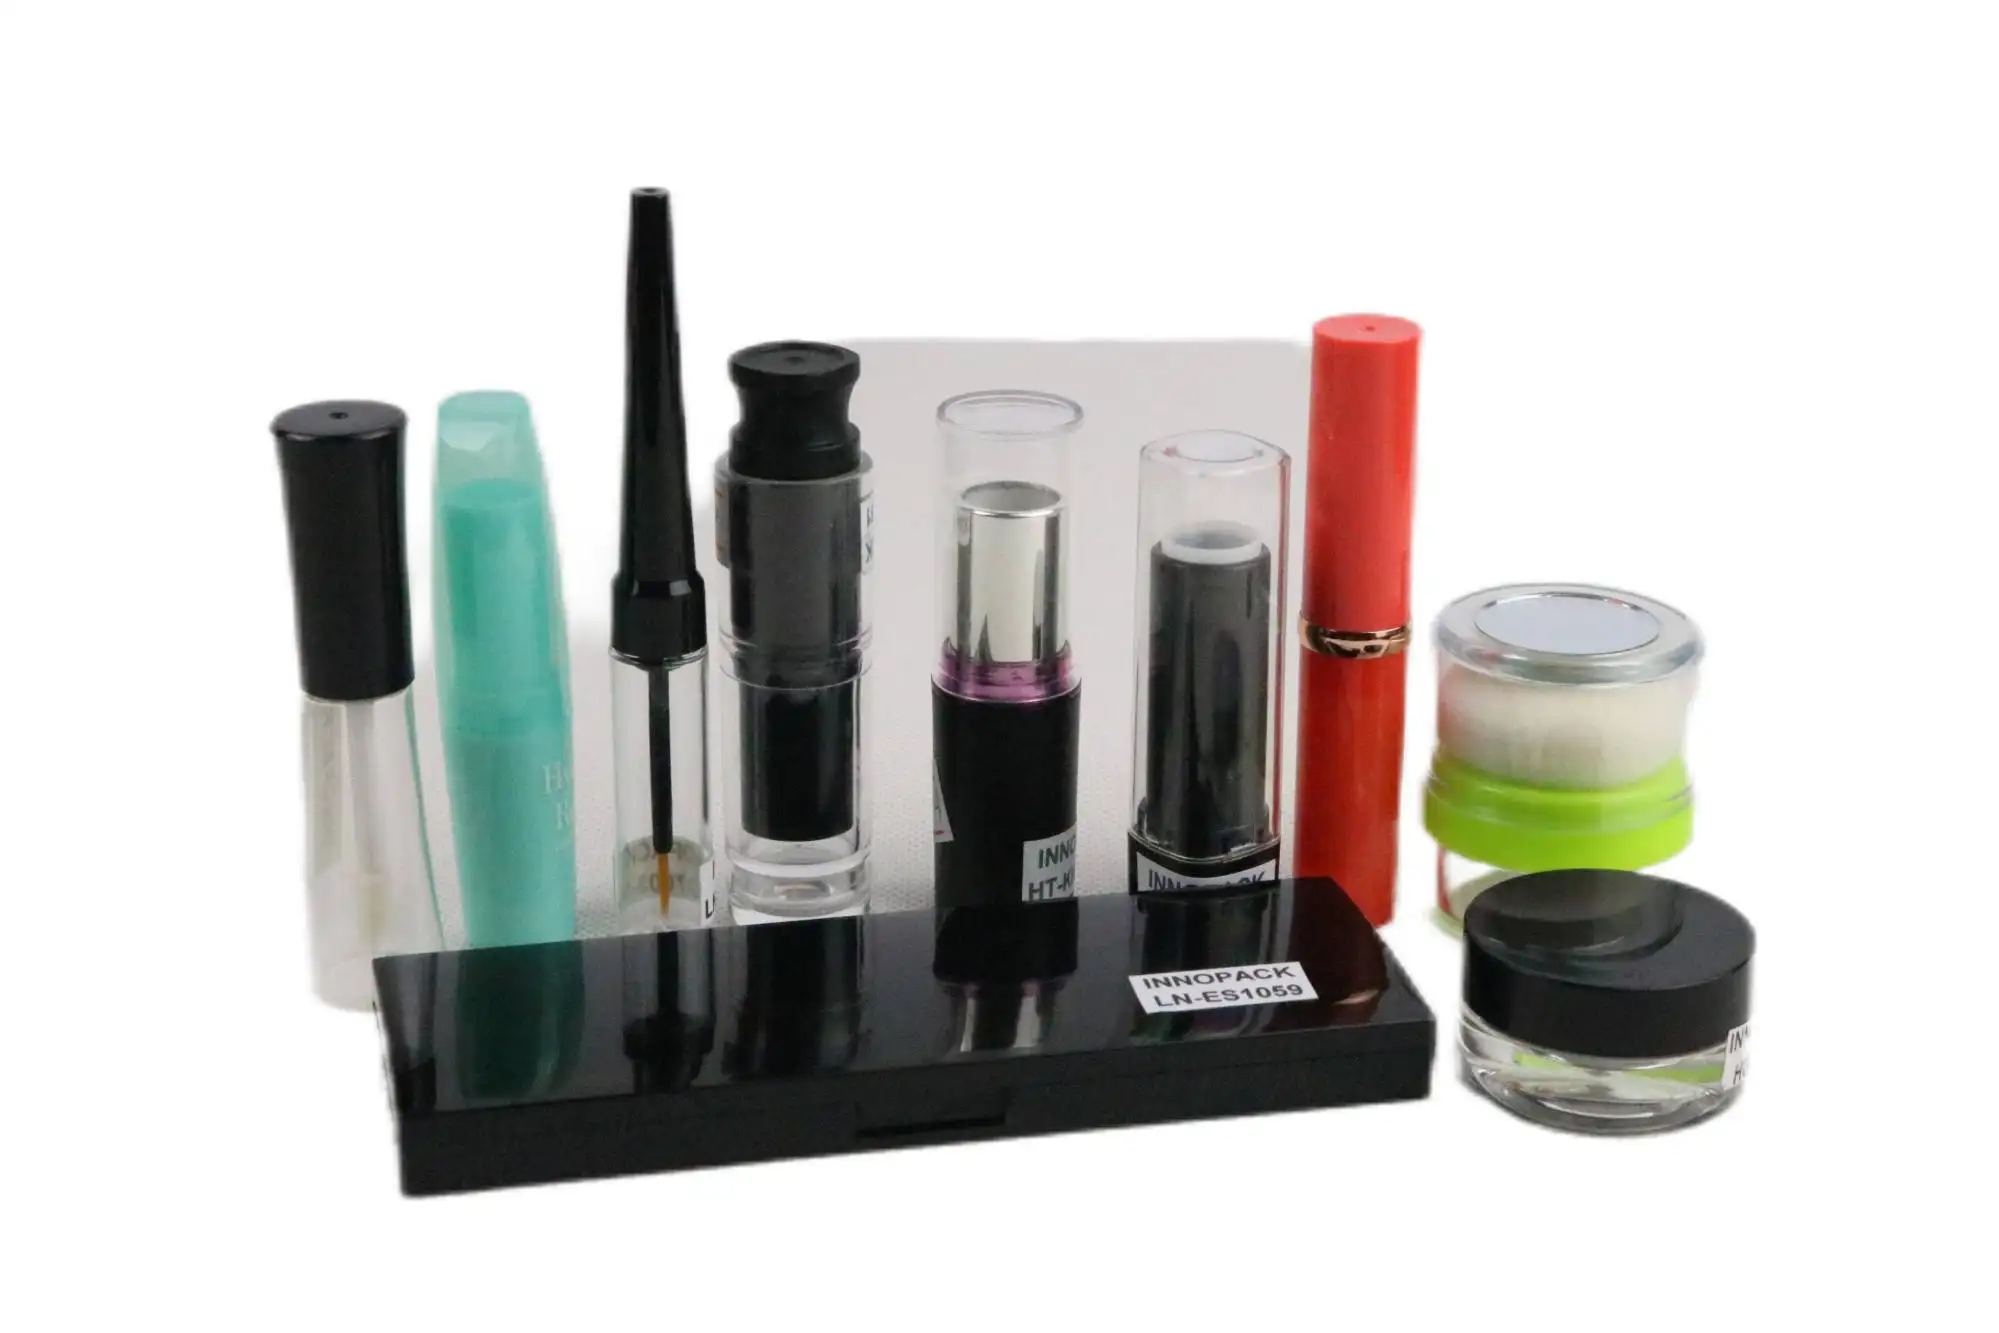 Leeres doppelluftkissen bb grundierung puff kosmetikbehälter hohe qualität kompakt mit spiegel